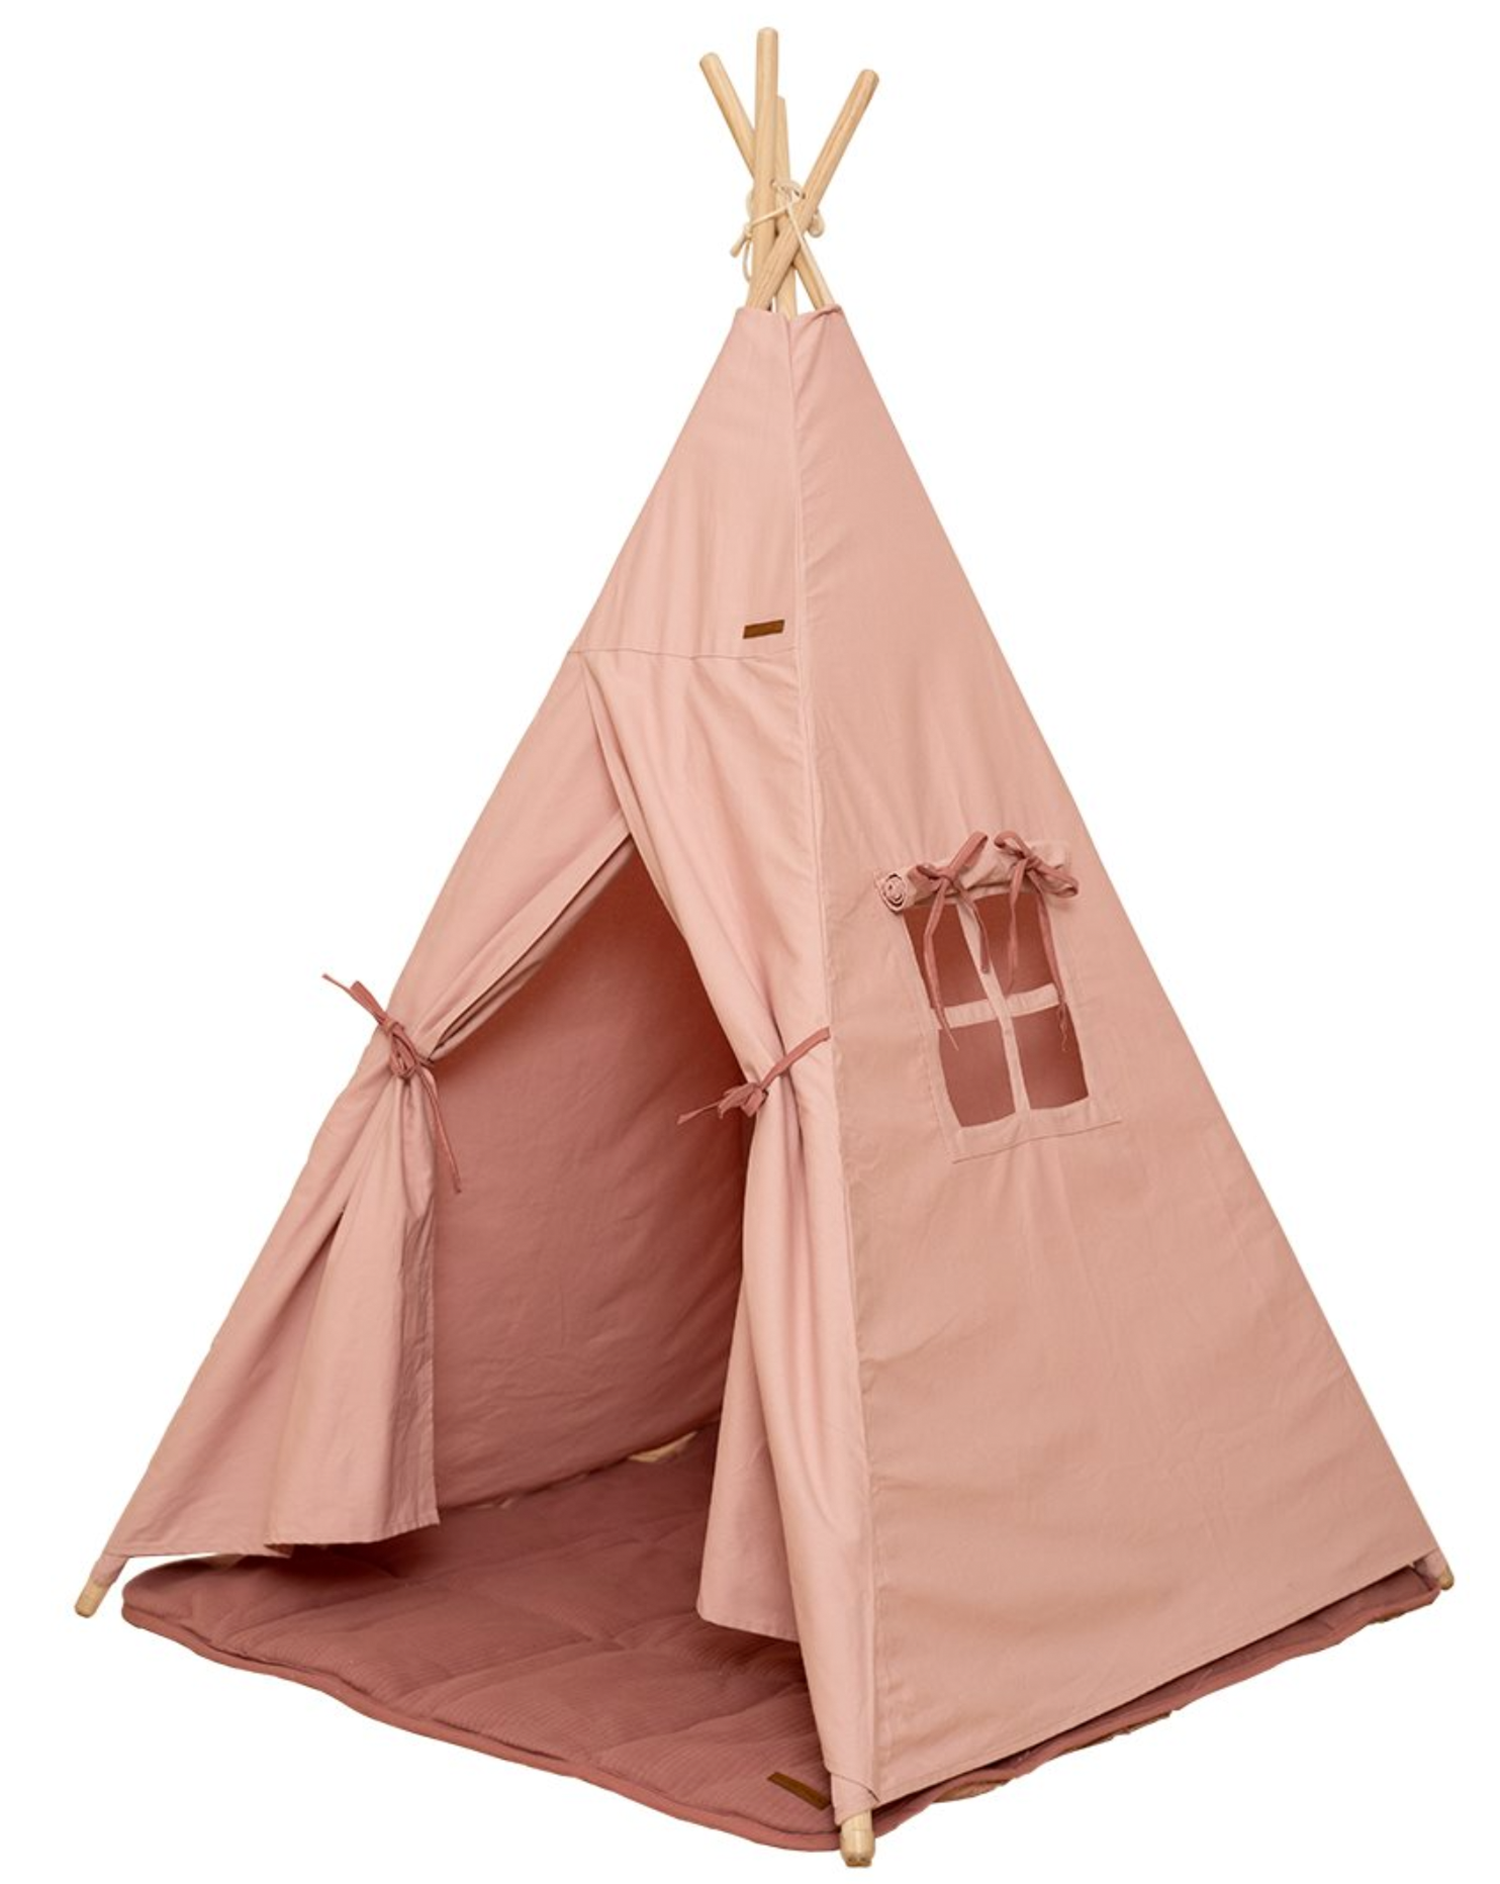 Spielzelt Tipi Zelt aus Stoff inkl. Matte rosa